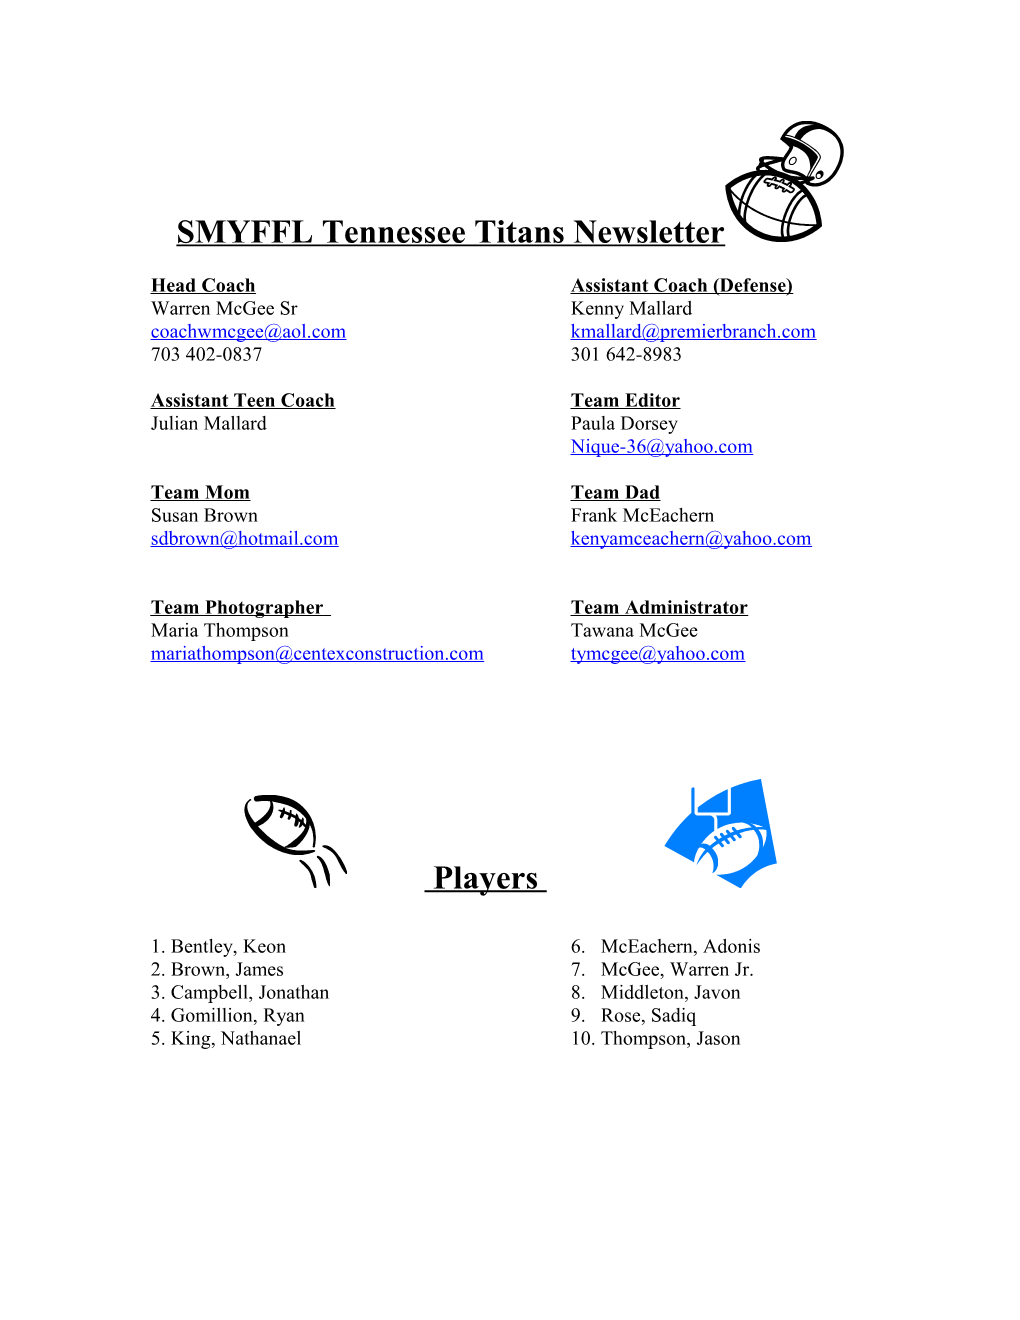 SMYFFL Tennessee Titans Newsletter